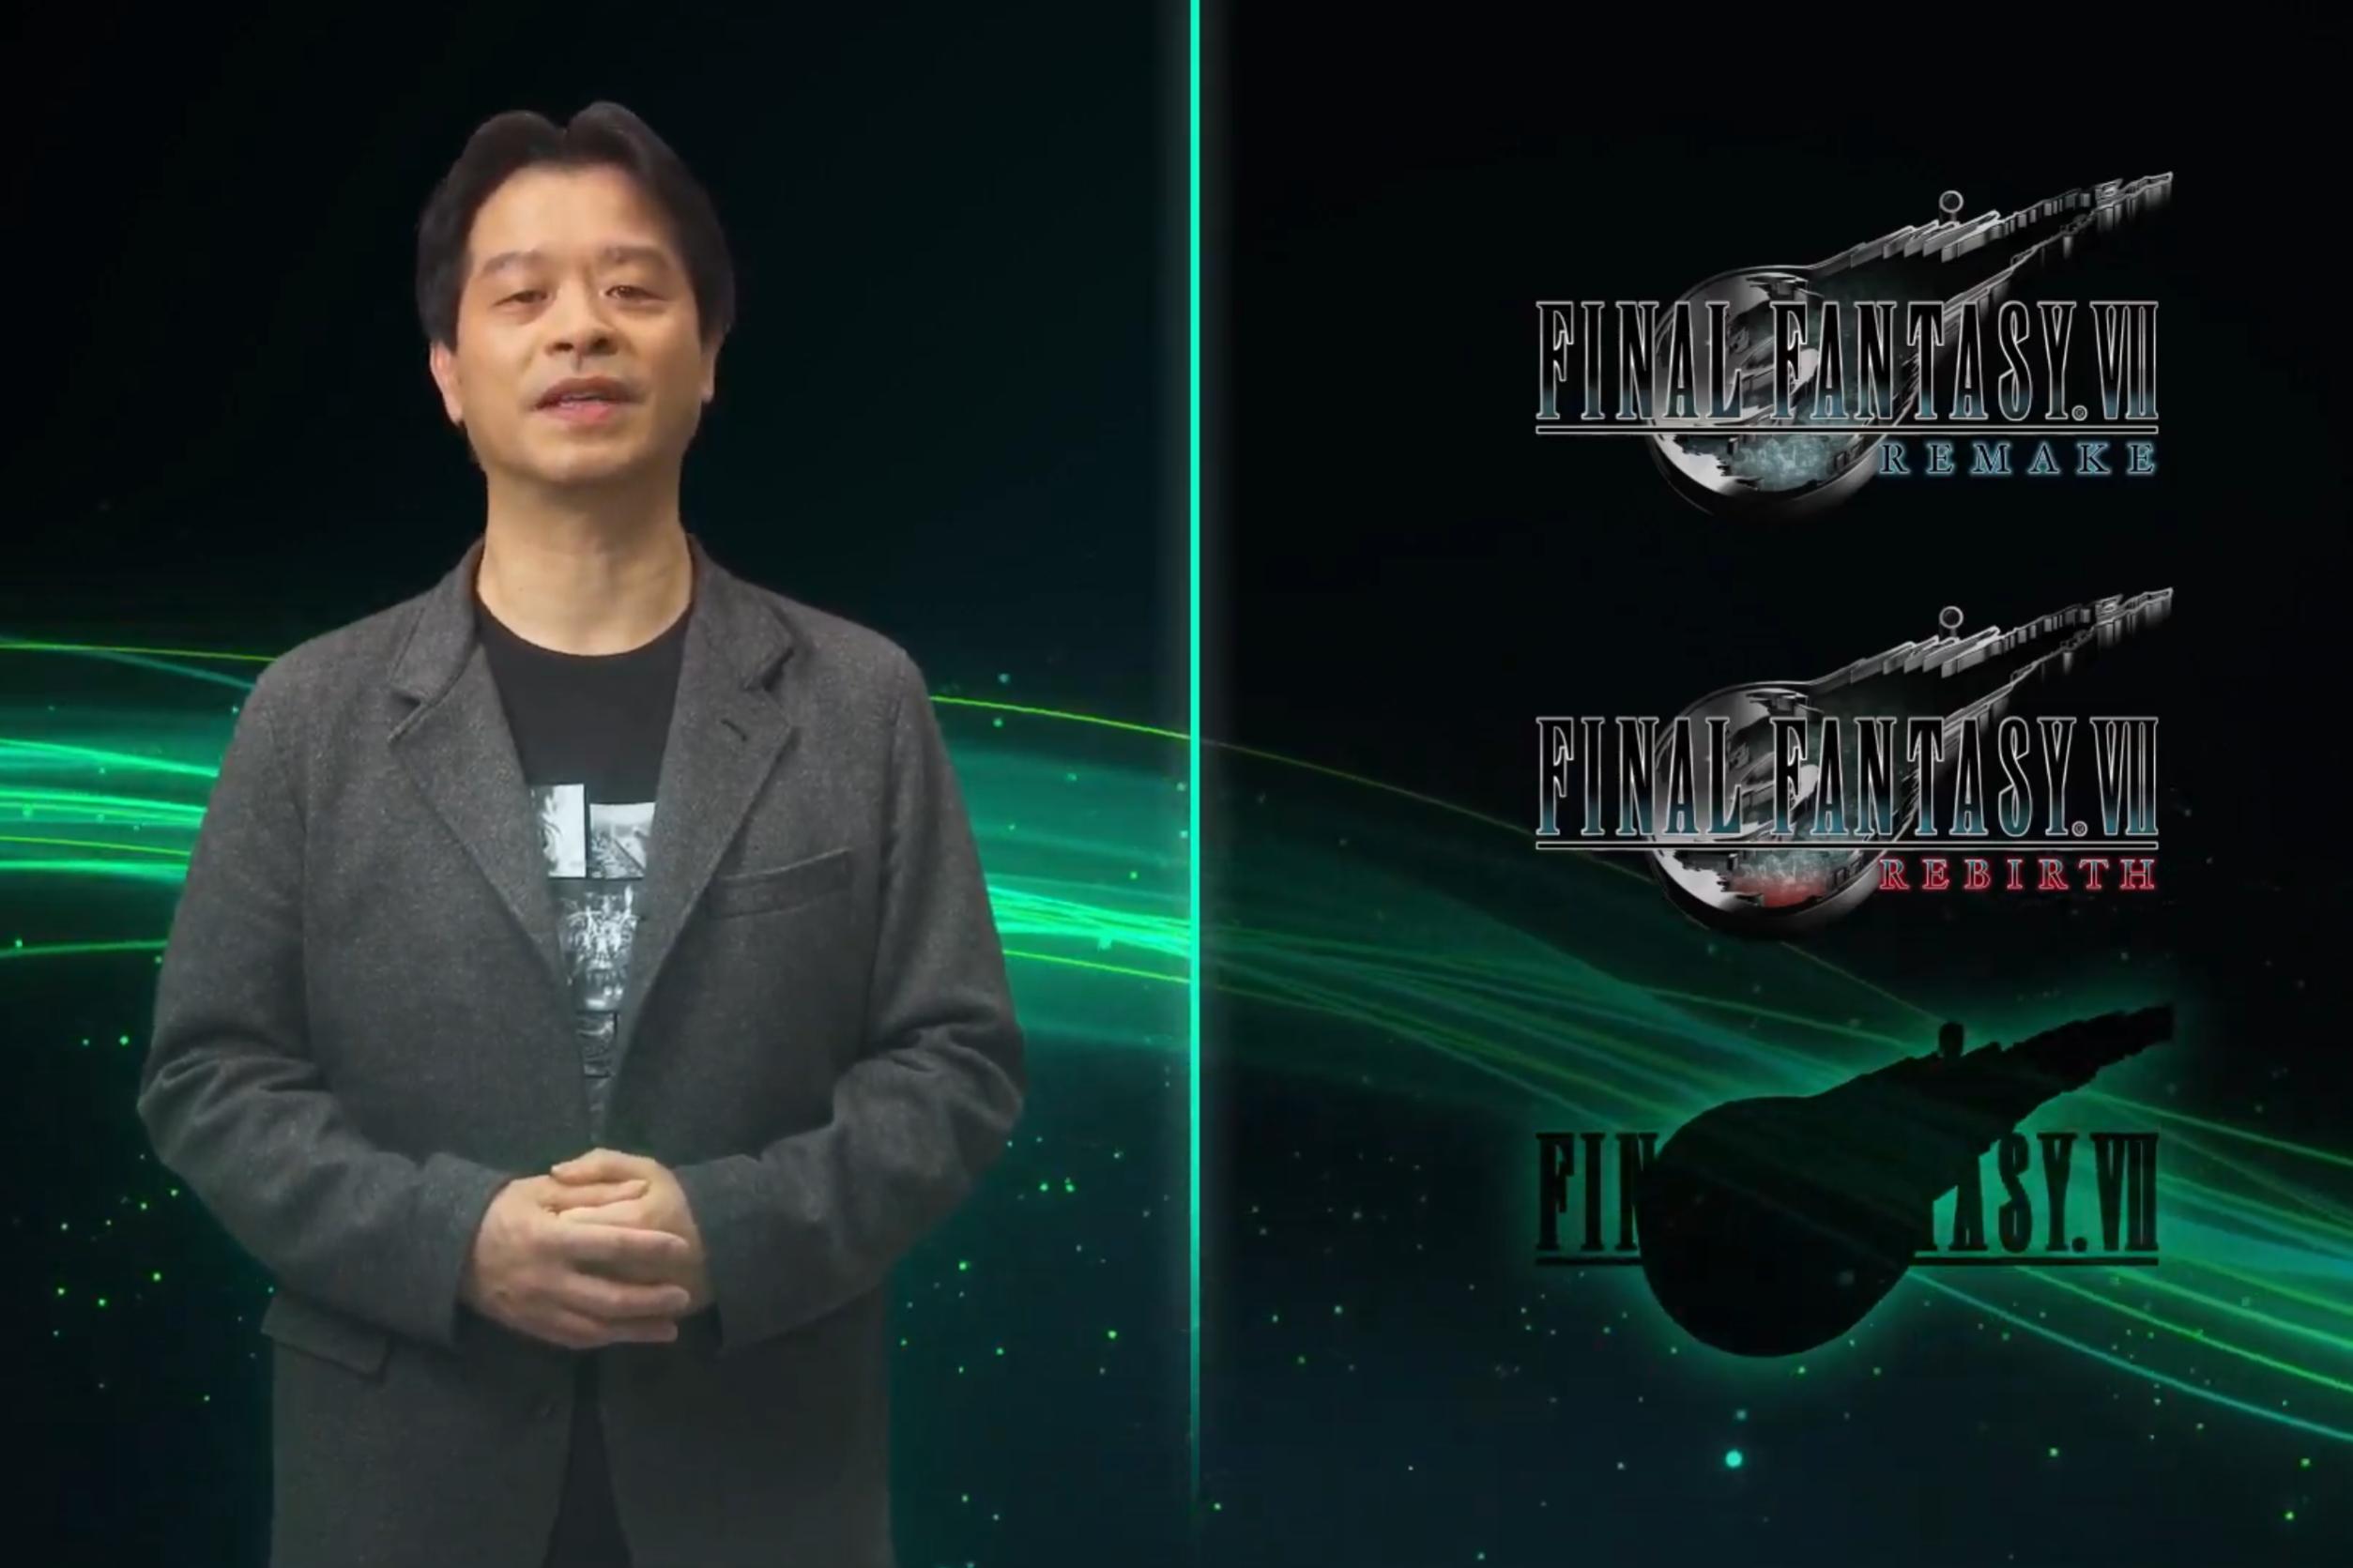 Confirmado: Final Fantasy VII Remake terá 3 partes no total